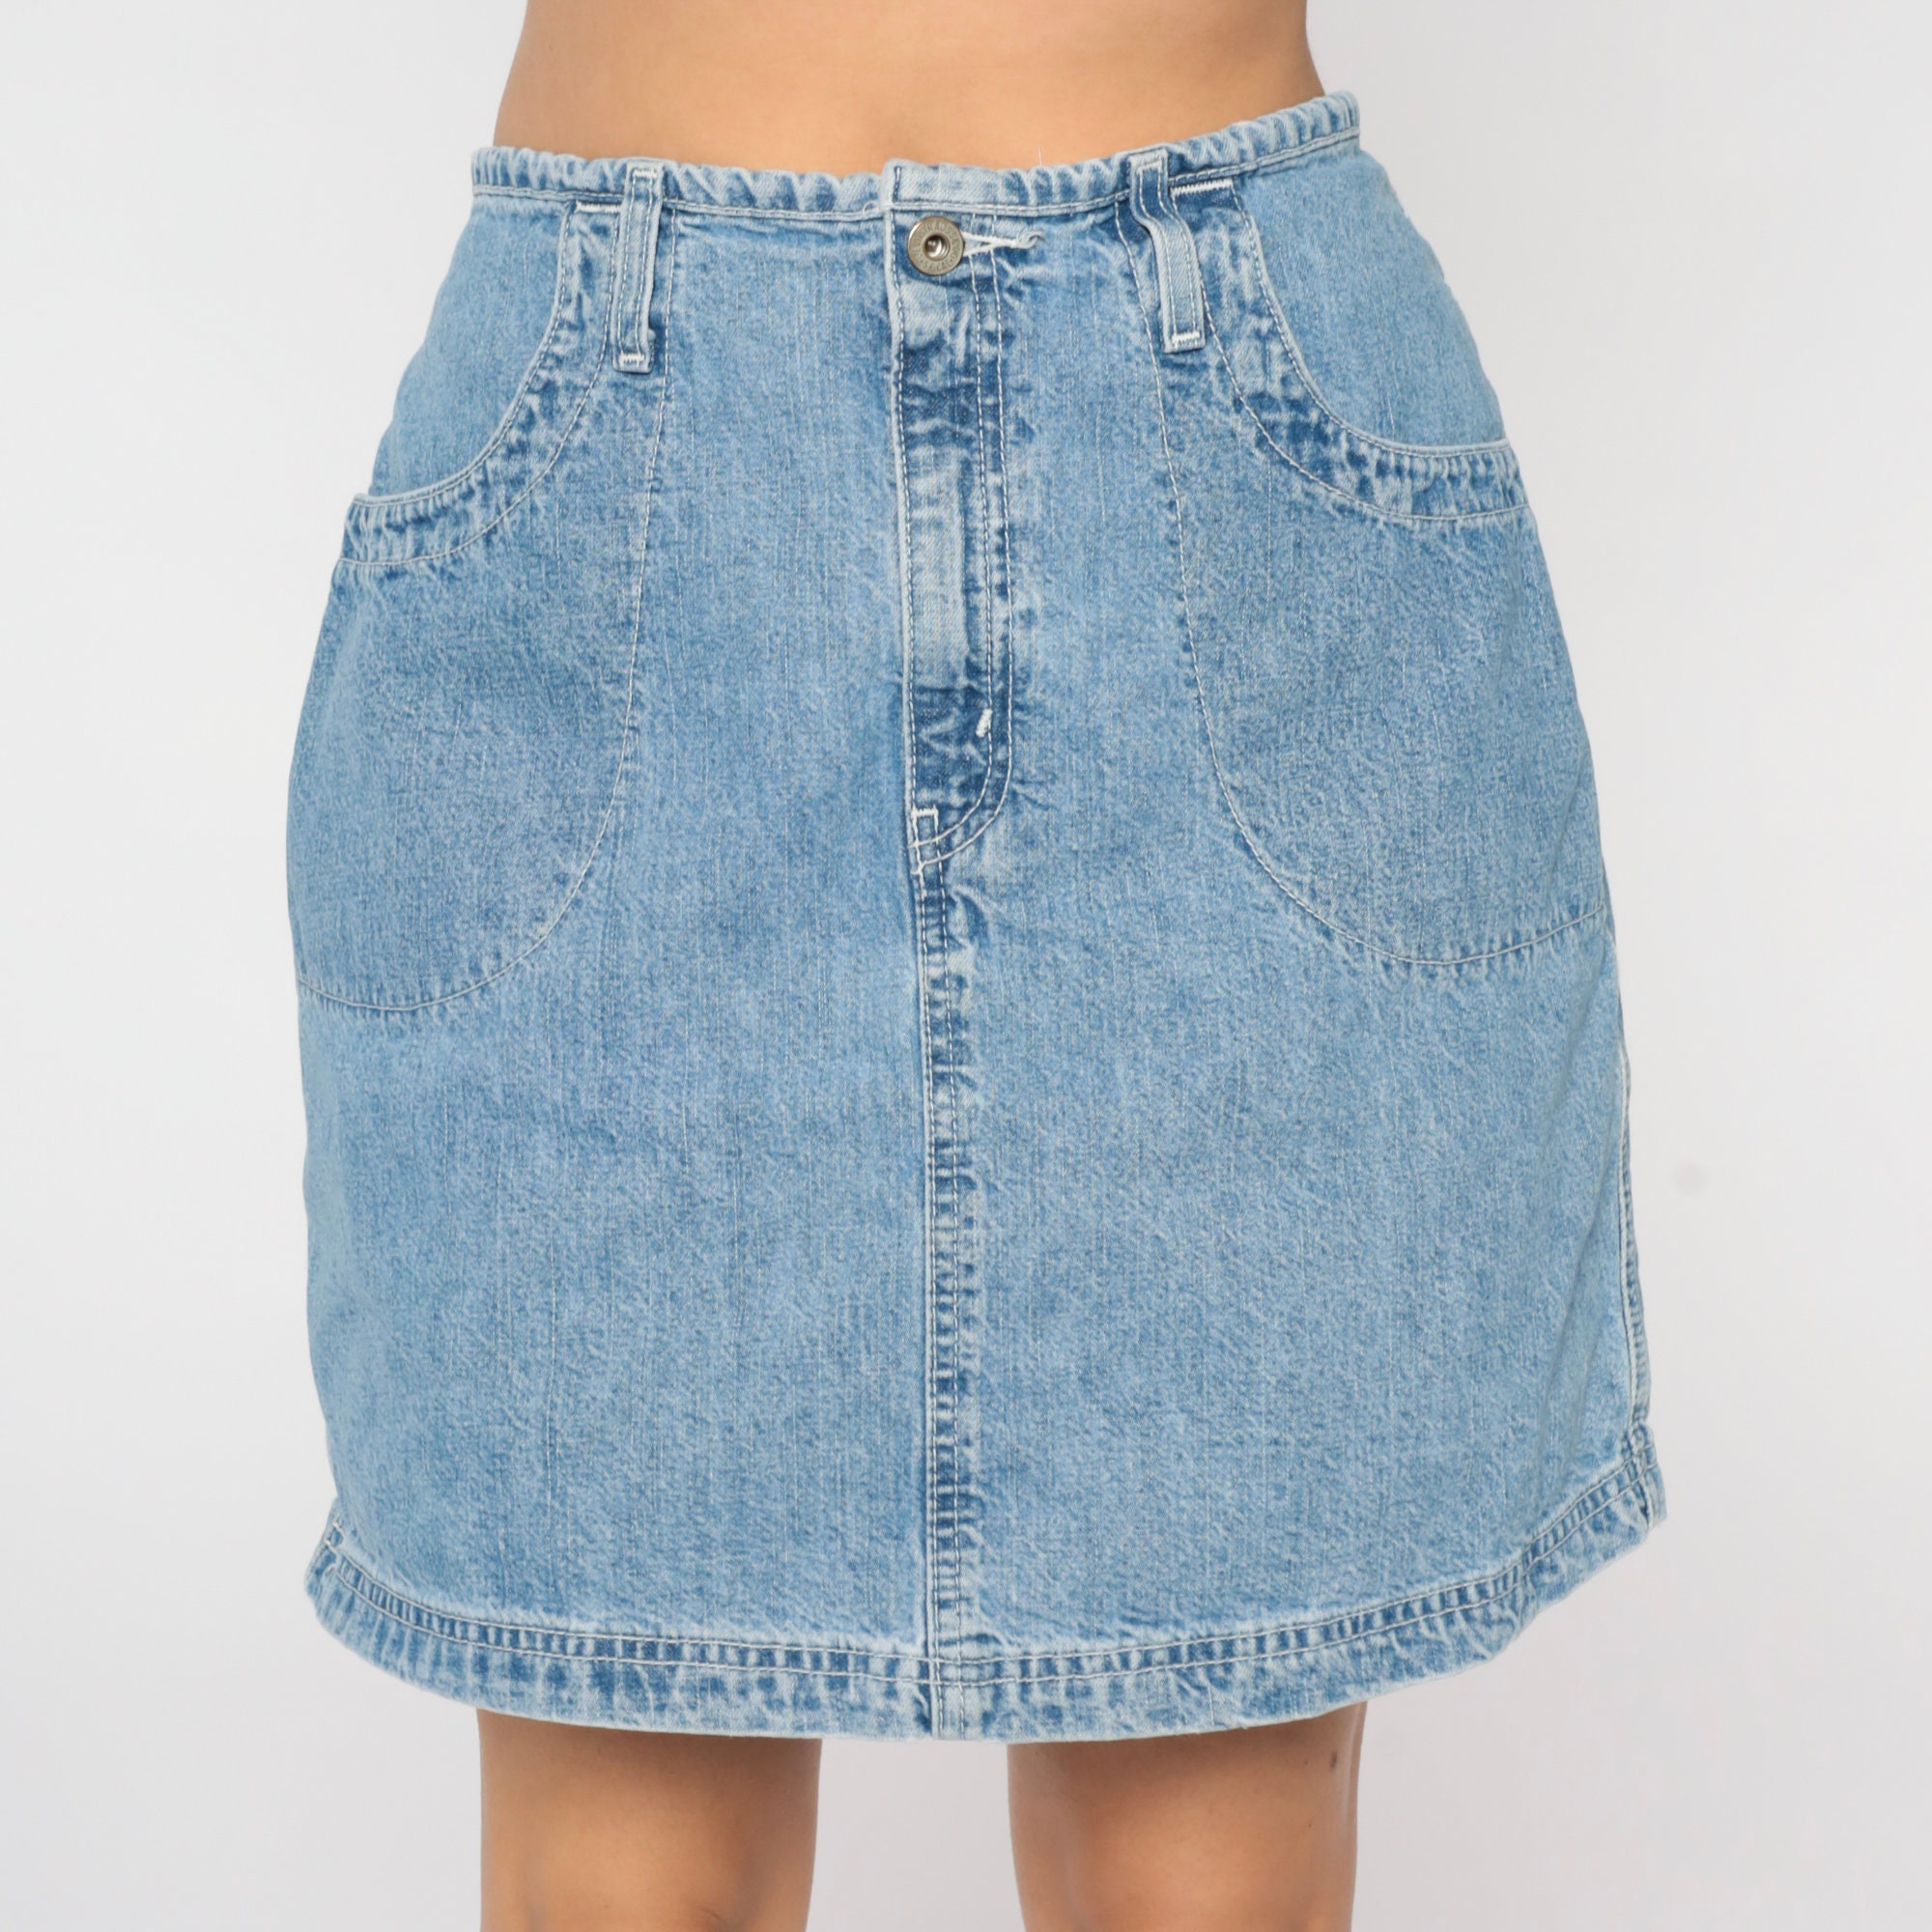 Levis Jean Skirt 90s Denim Mini Skirt Levi Strauss Dry Goods High ...